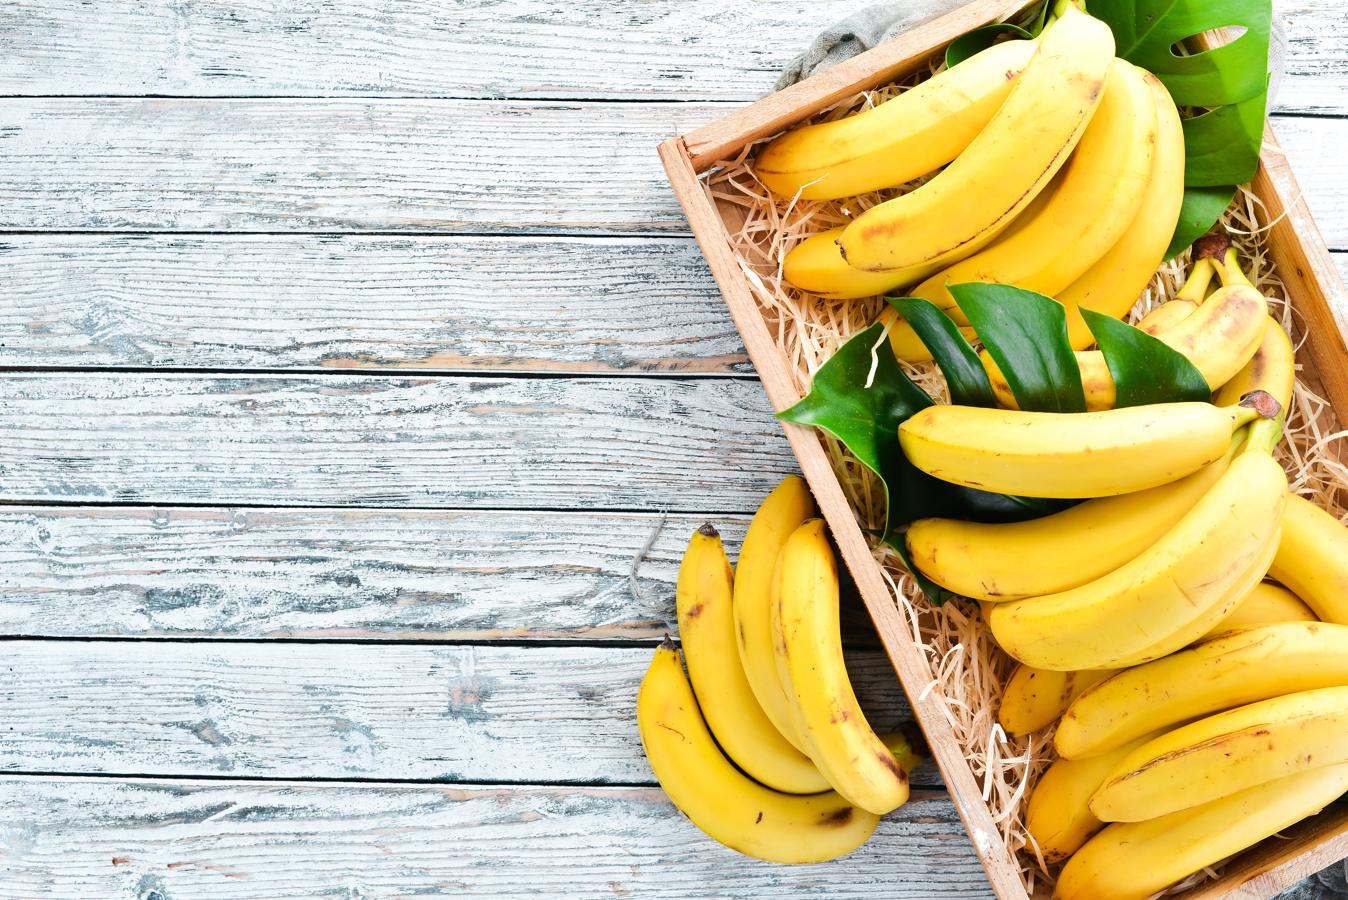 Plátano. El <a href="https://www.abc.es/bienestar/alimentacion/abci-platano-201909301308_noticia.html" target="_blank">plátano </a>tiene un alto contenido en azúcares e hidratos de carbono y eso hace que tenga un mayor valor calórico respecto a la media del resto de frutas. Su interés nutricional radica en que es una buena fuente de potasio y magnesio. Además, el plátano es una fruta fácil de digerir y tiene efecto antidiarreico.